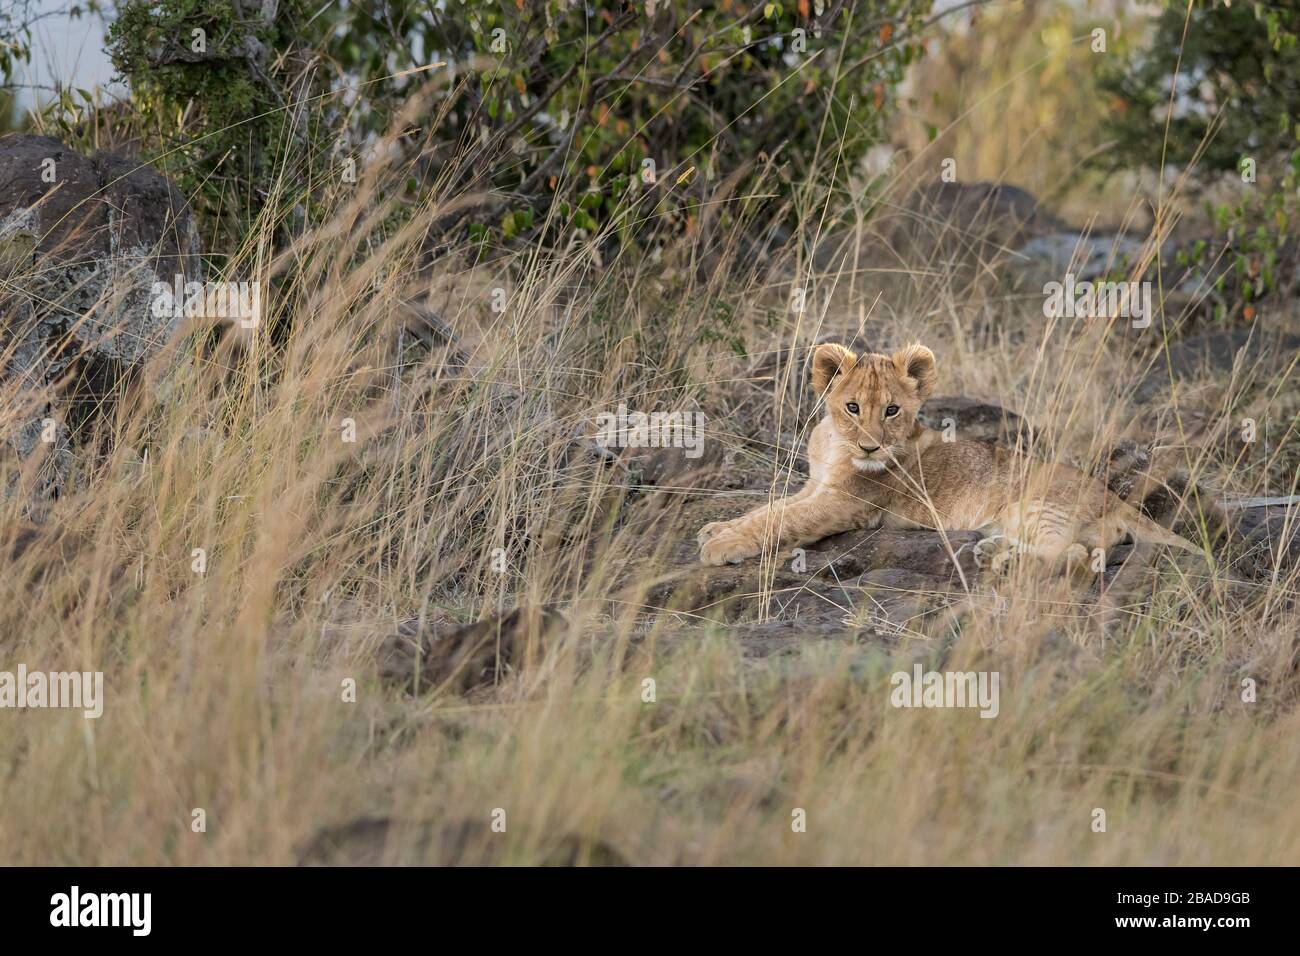 L'image du lion africain (Panthera leo) cub dans le parc national de Masai mara, au Kenya Banque D'Images